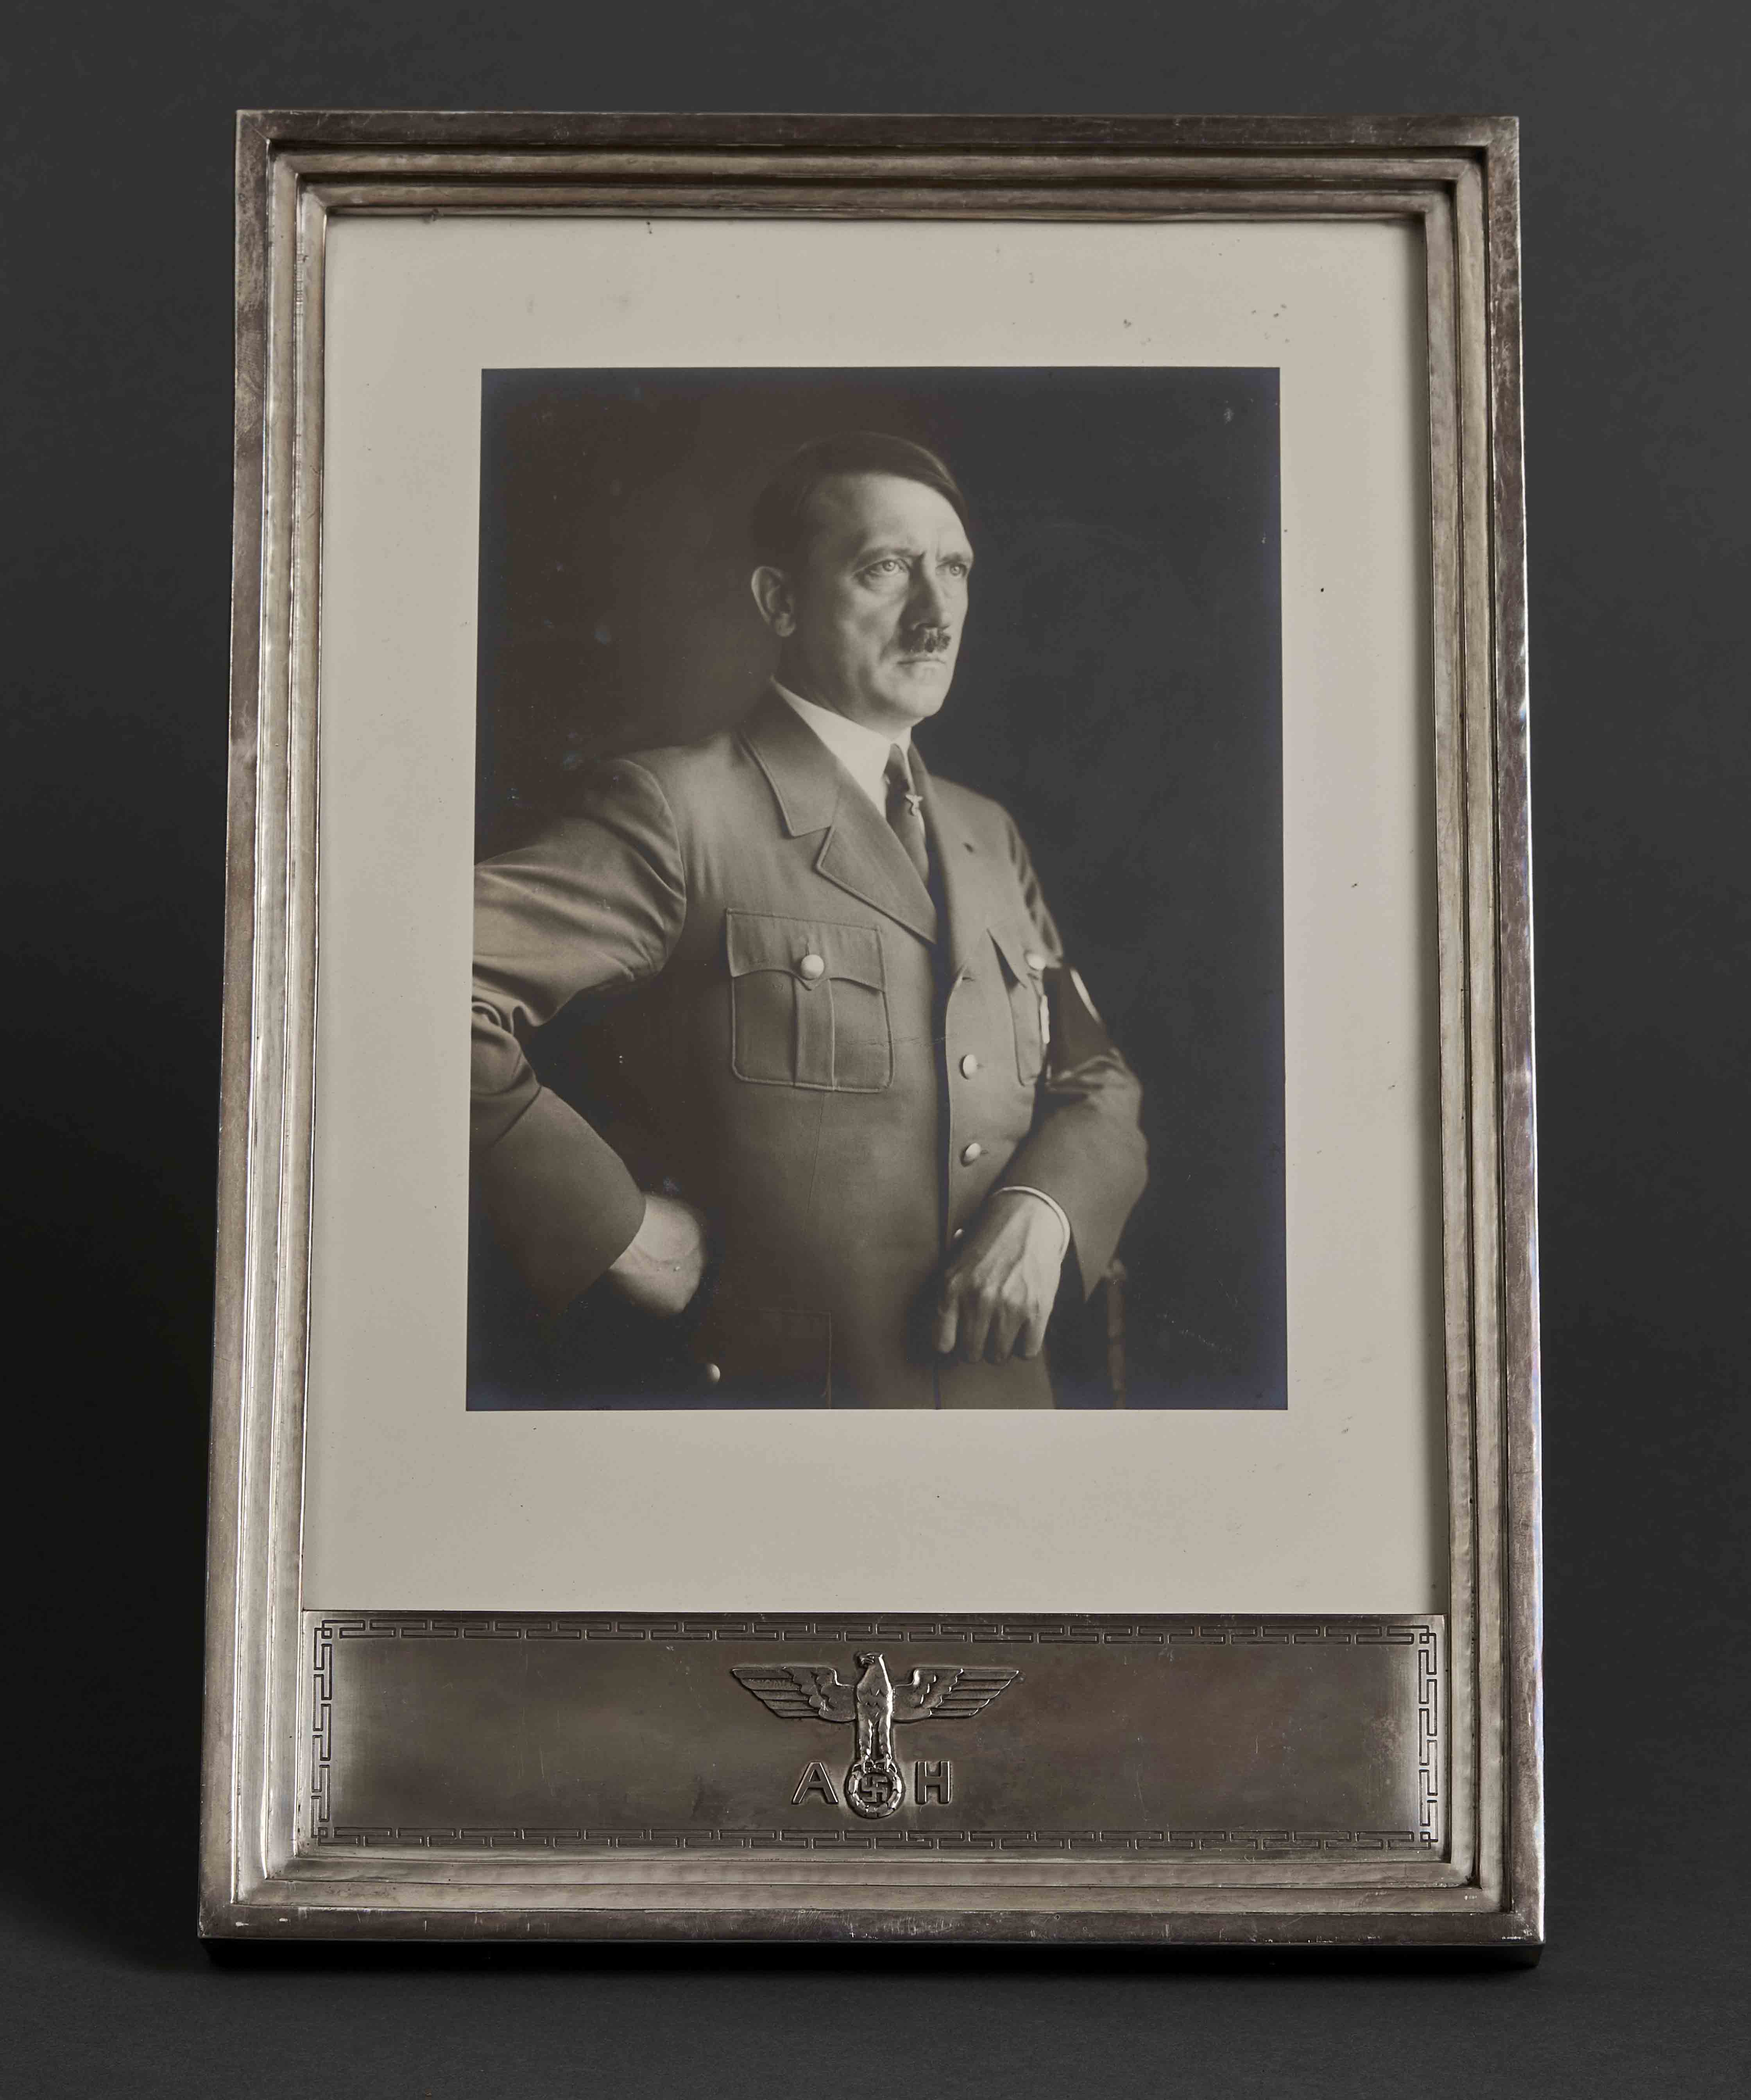 Adolf Hitler State Frame